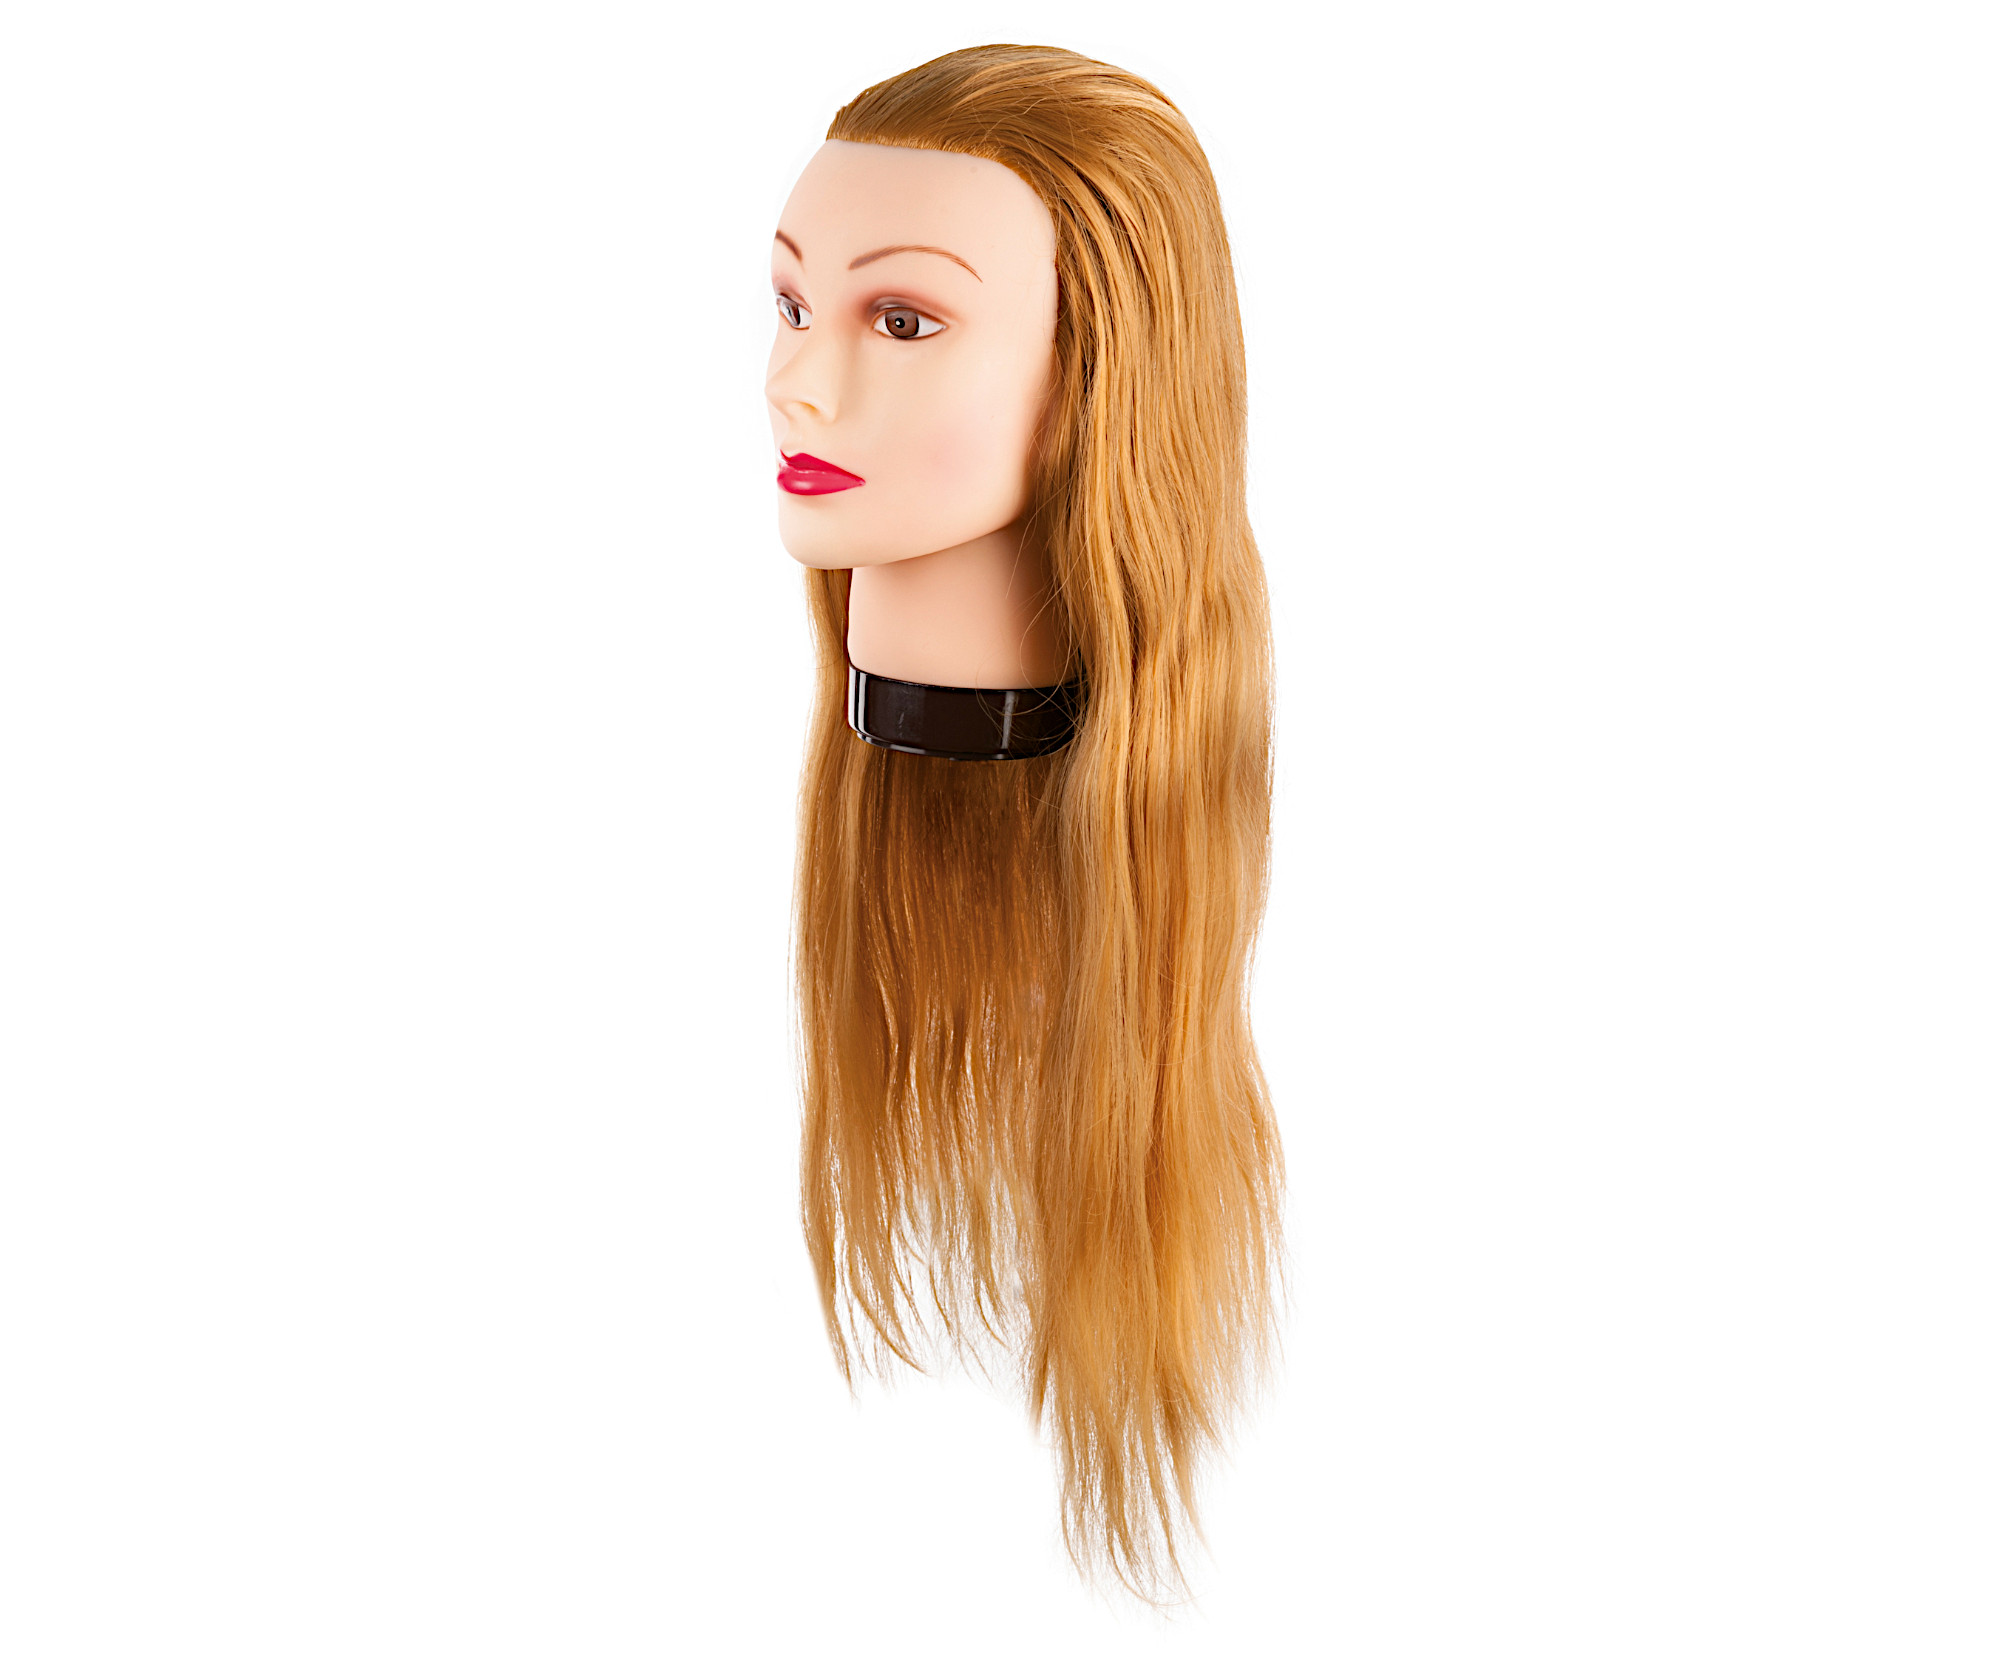 Cvičná hlava s umělými vlasy Eurostil Profesional - světlá blond, 55-60 cm (02545) + DÁREK ZDARMA